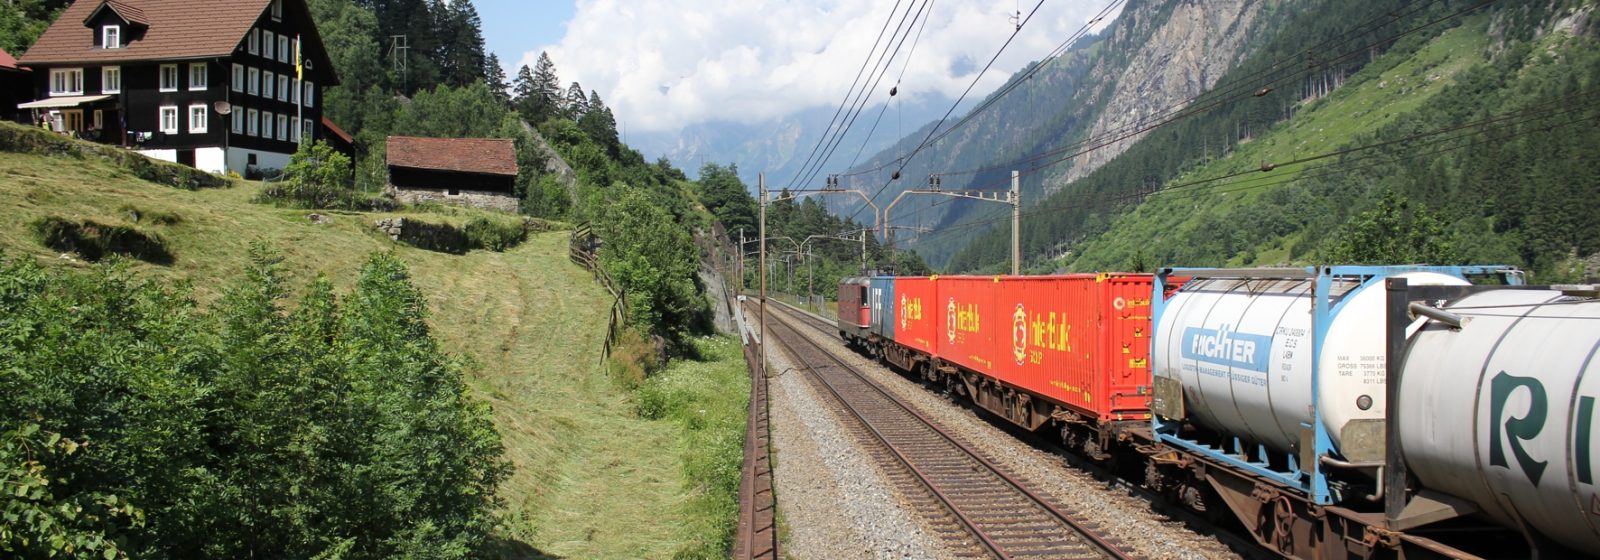 Een trein van Kombiverkehr op de Gotthardroute